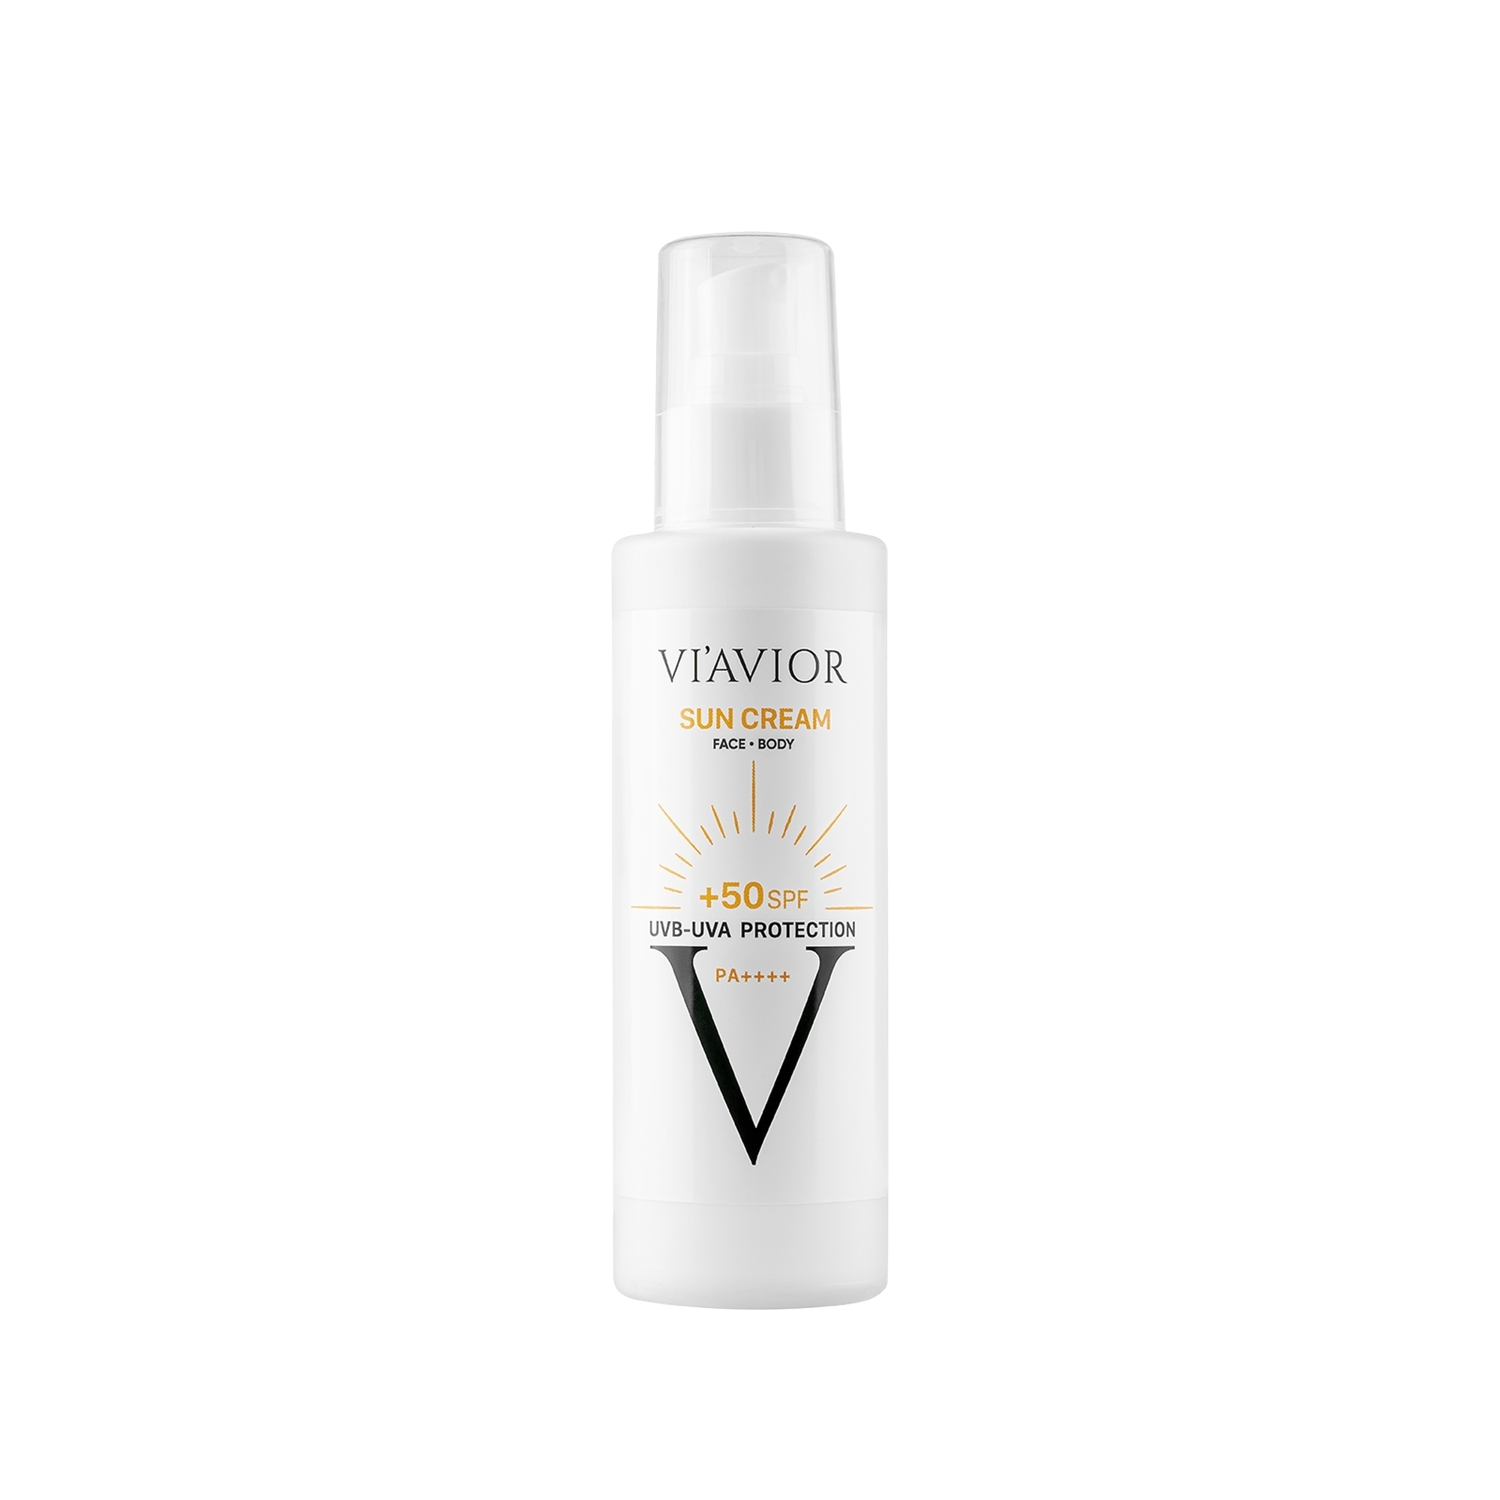 Viavior Sun Cream 50 SPF Güneş Koruyucu Yüz ve Vücut Kremi 150 ml